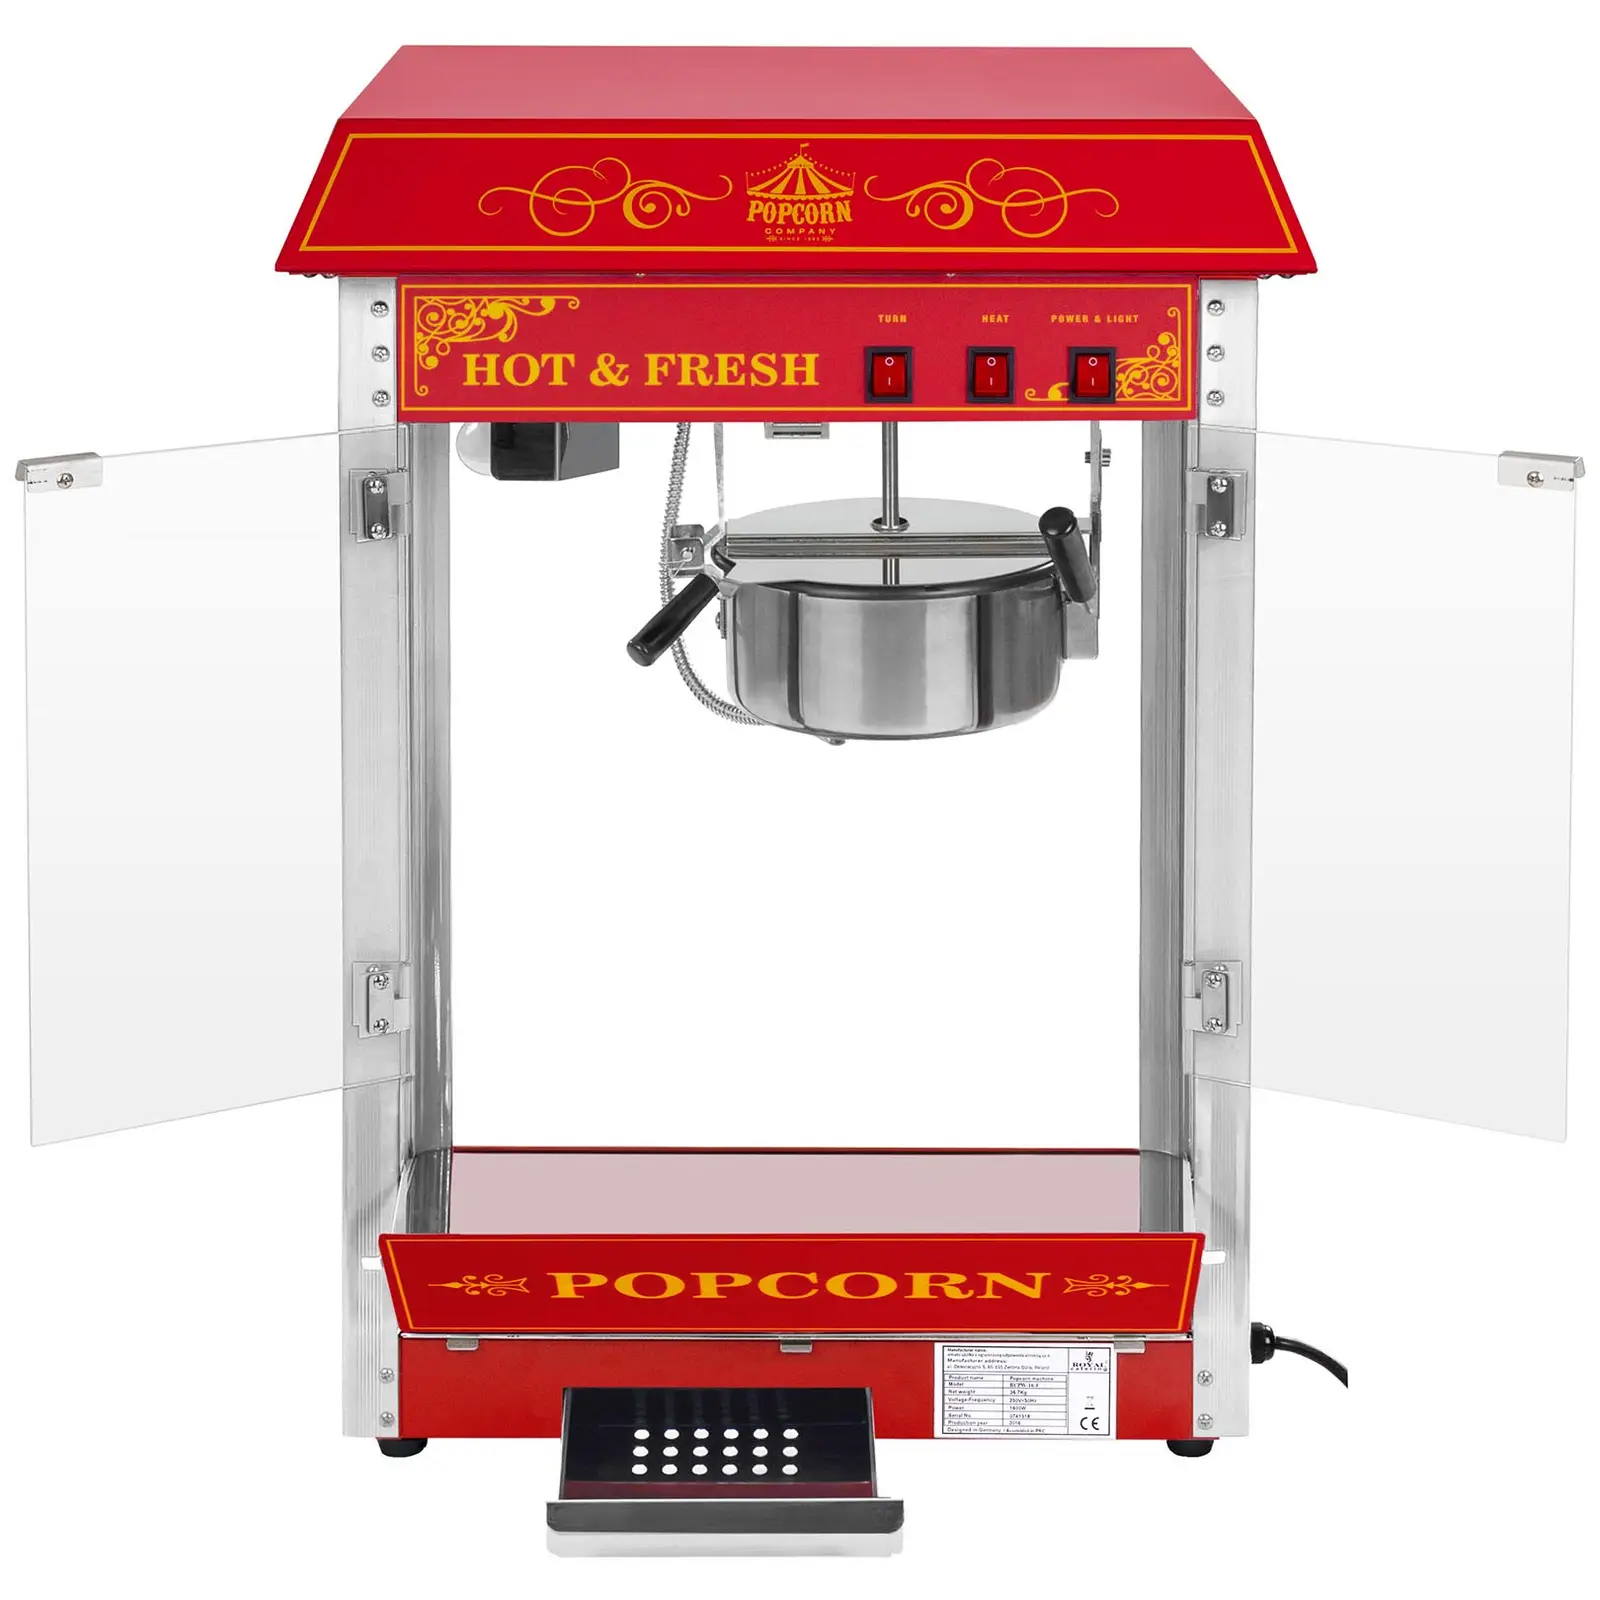 Stroj na popcorn červený - americký design